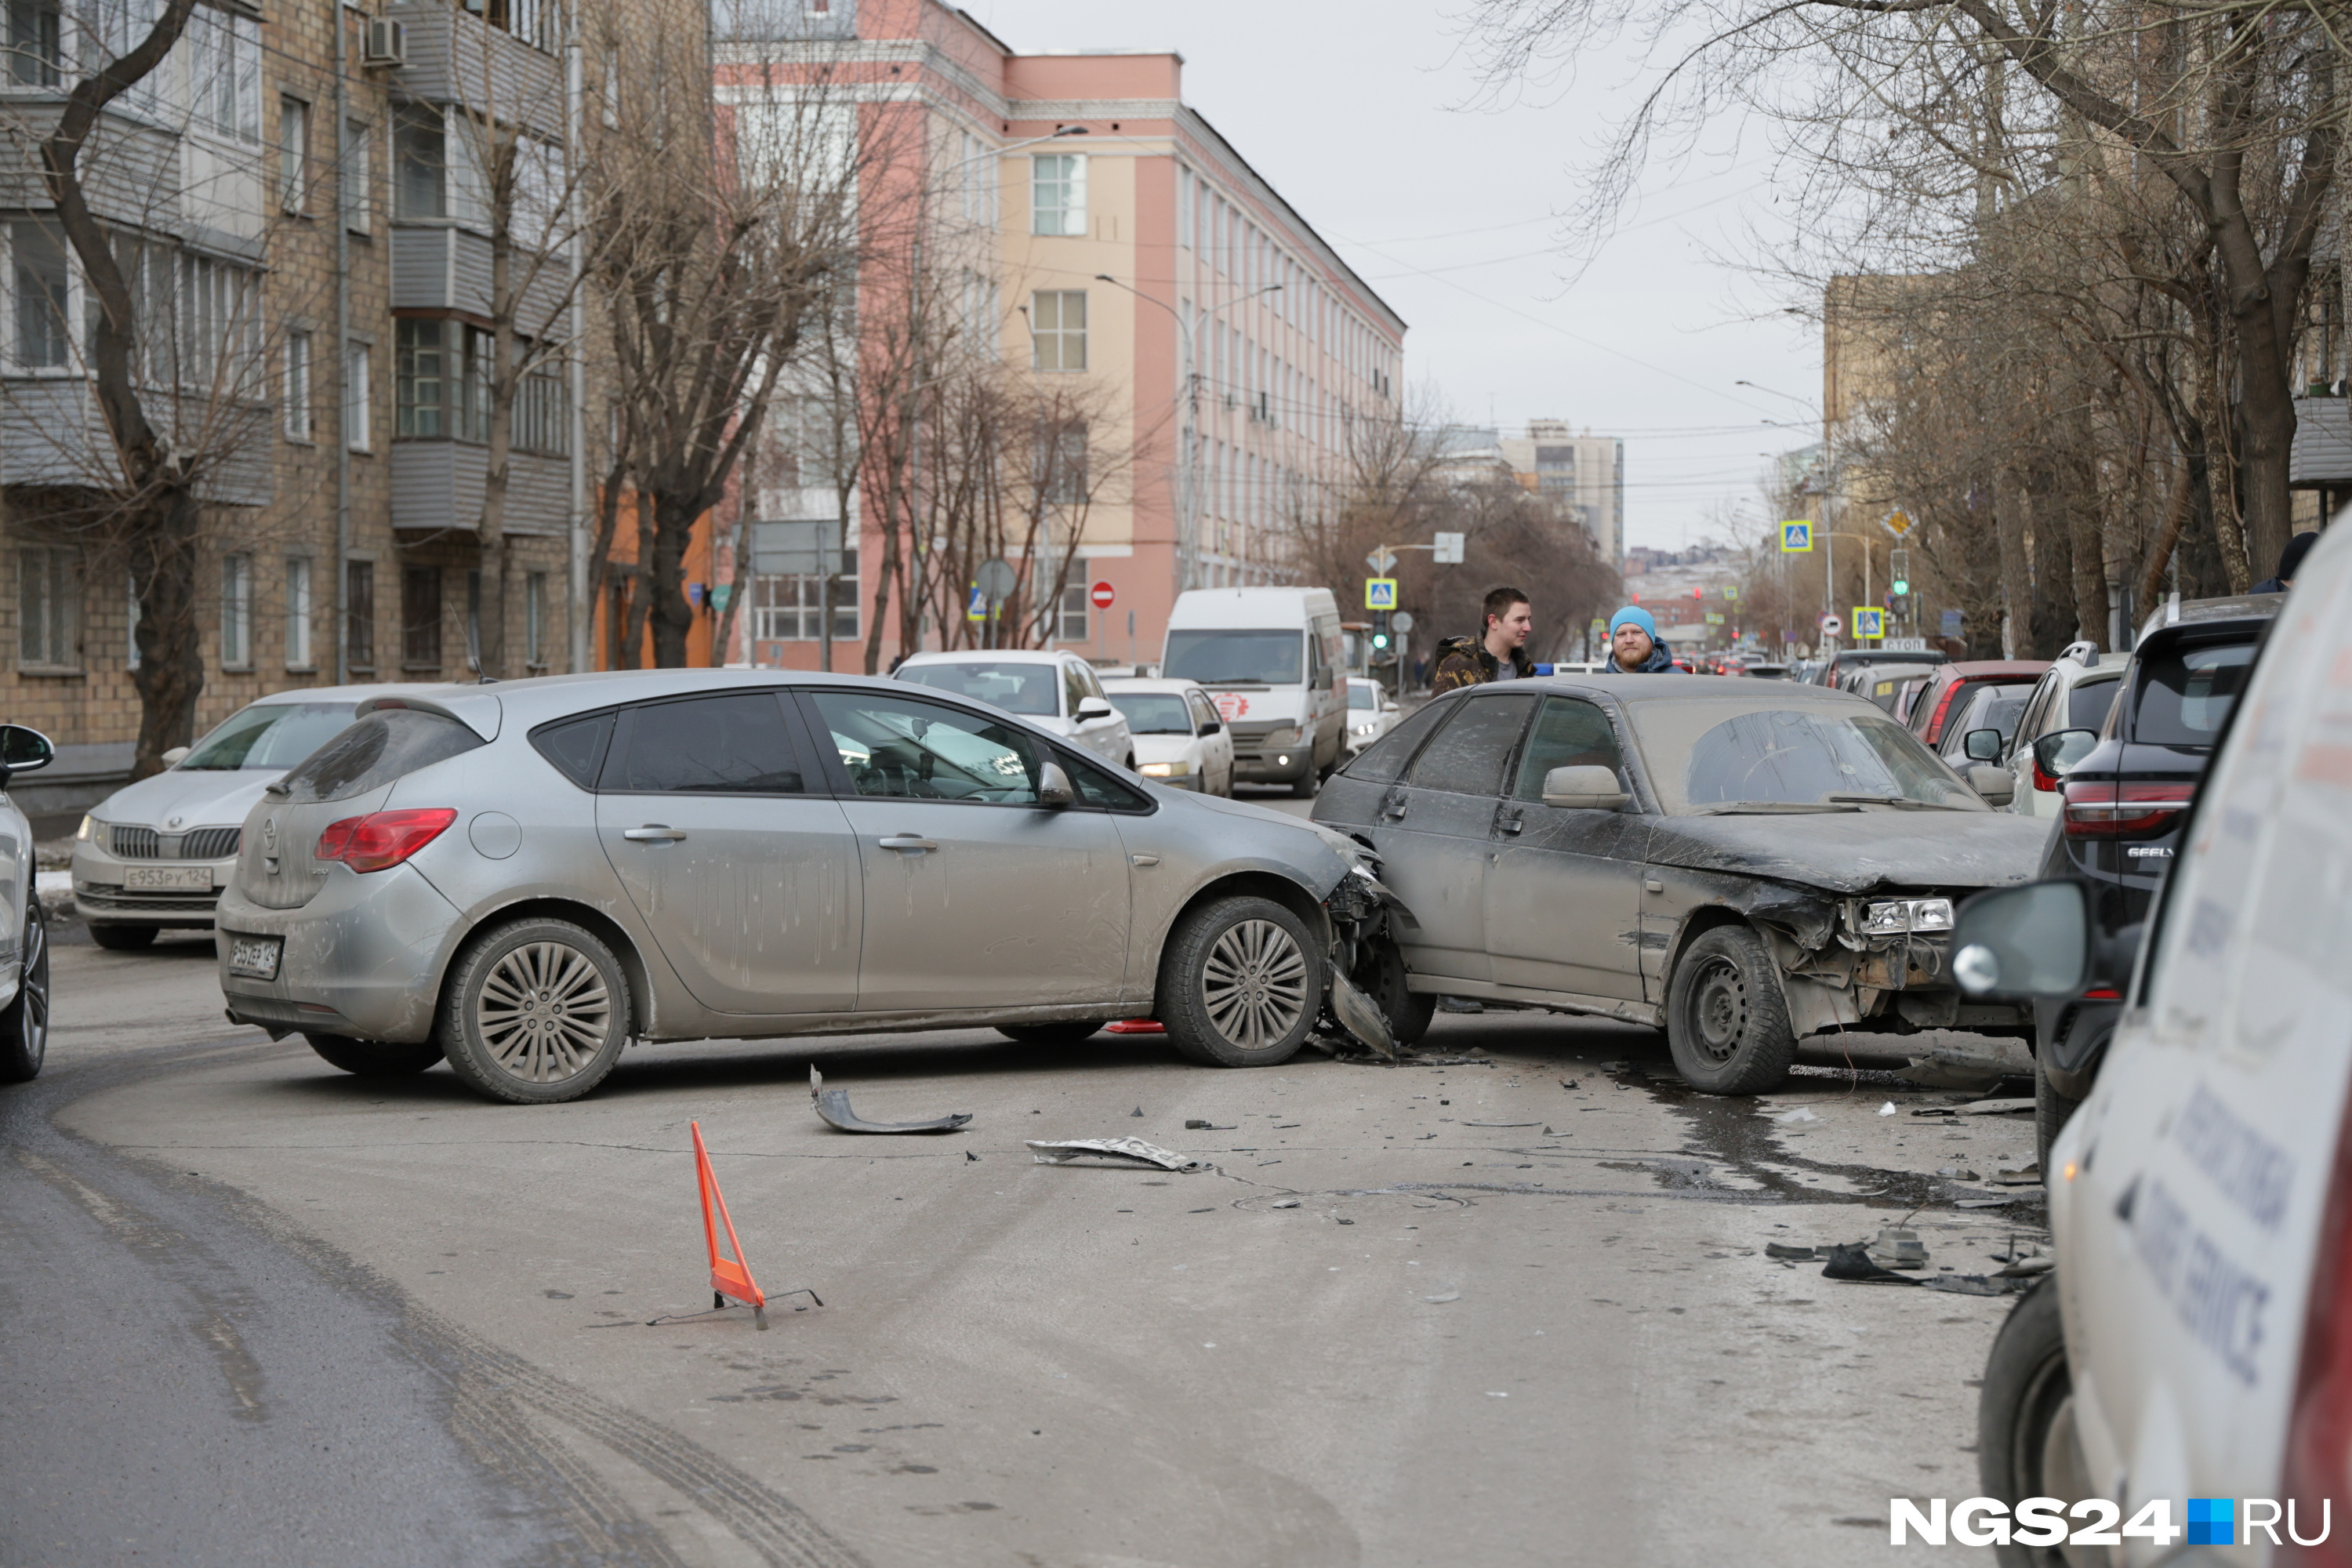 В центре Красноярска произошло массовое ДТП с пятью машинами. Движение там плотное